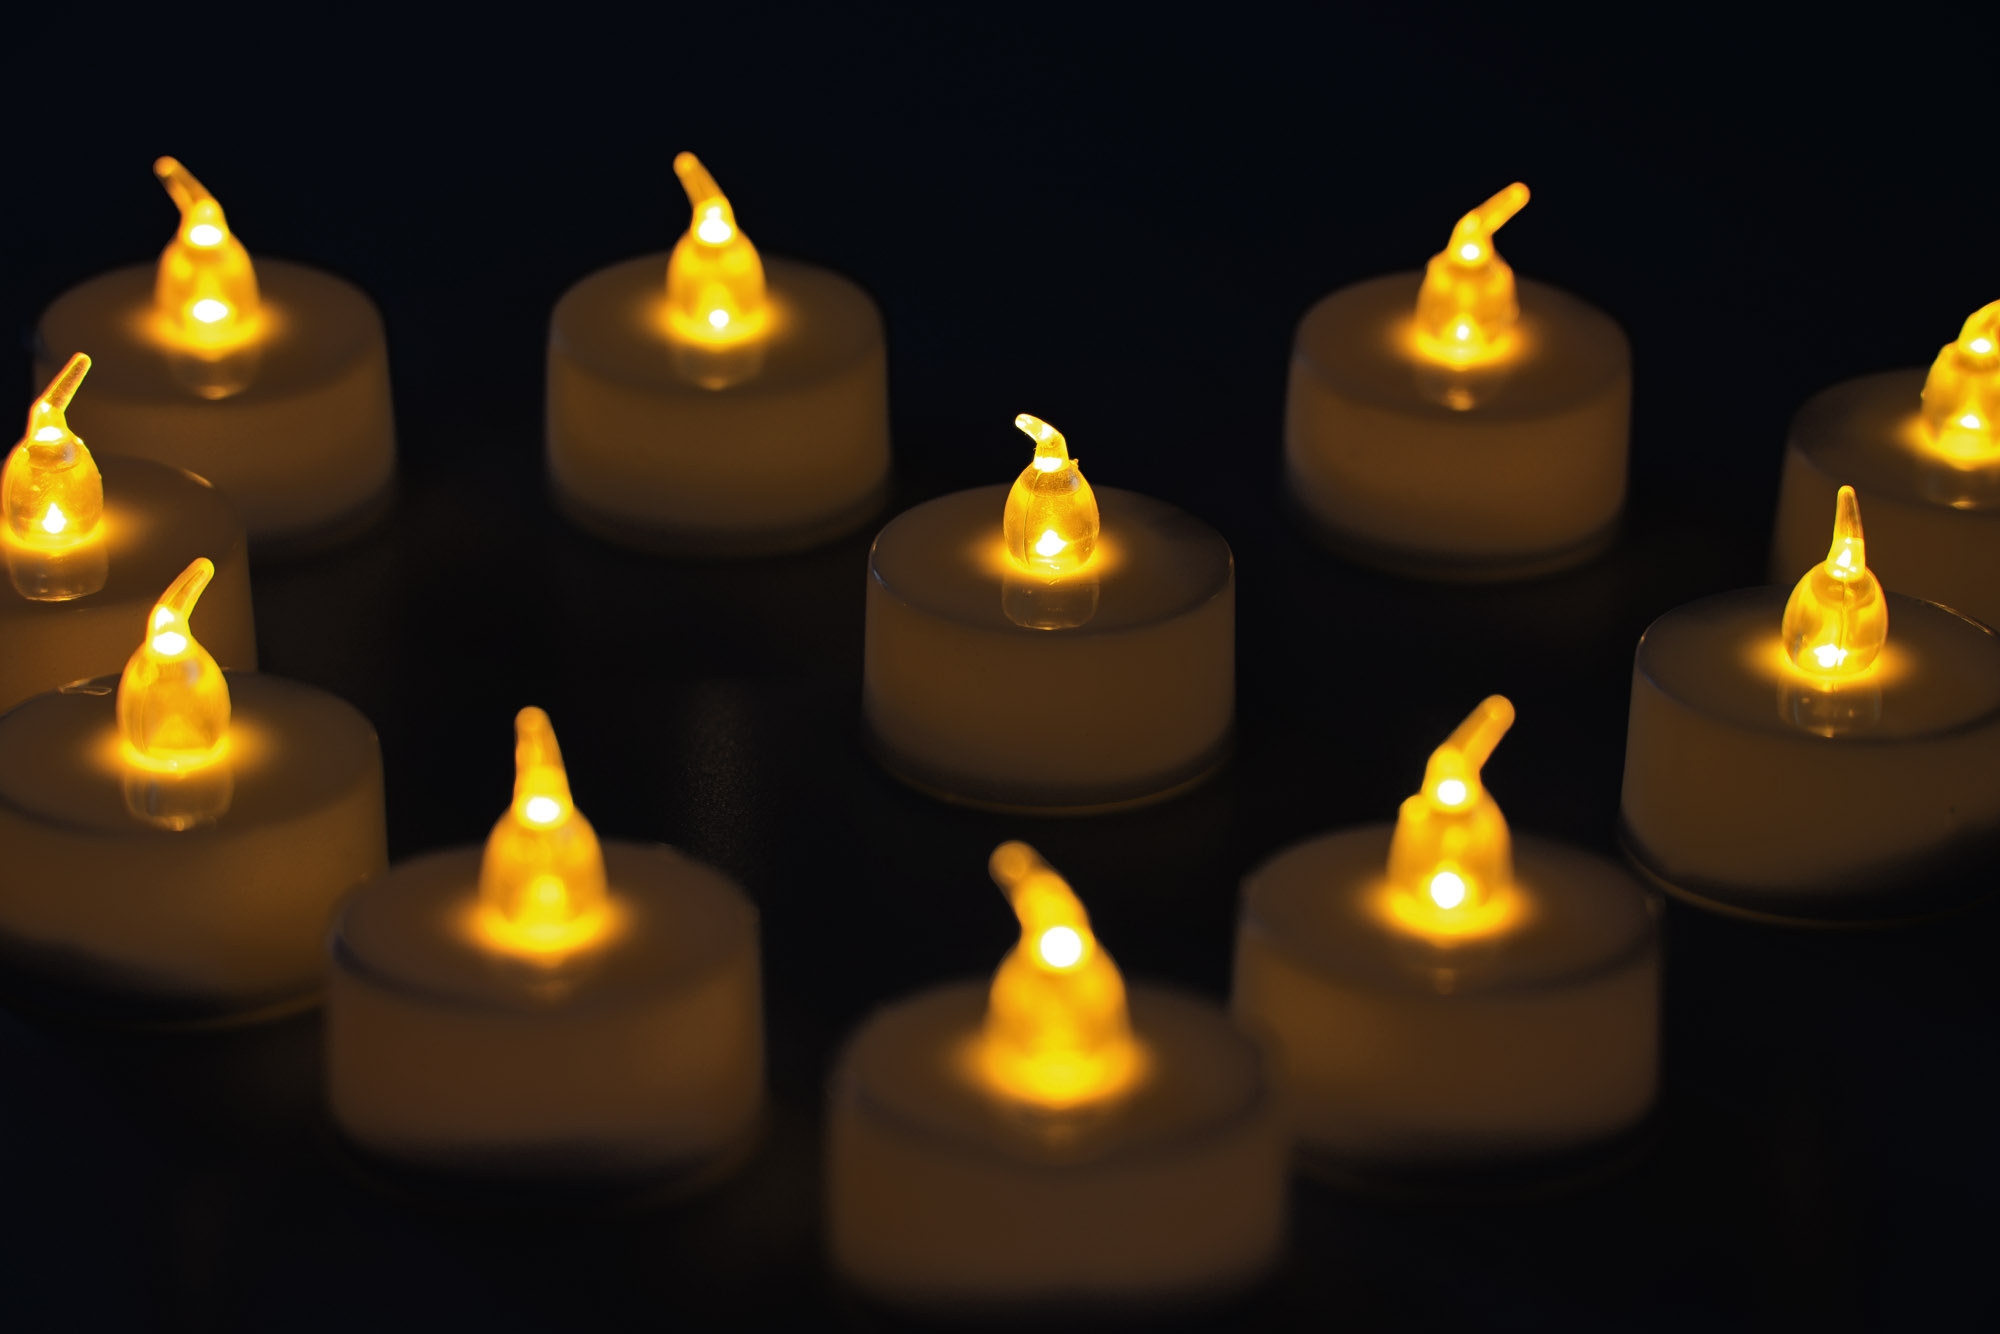 12er set LED schwimmende Kerzen Kerzen f/ür Drau/ßen Wasserdicht Wei/ßes flackerndes Licht Teelicht f/ür Hochzeit